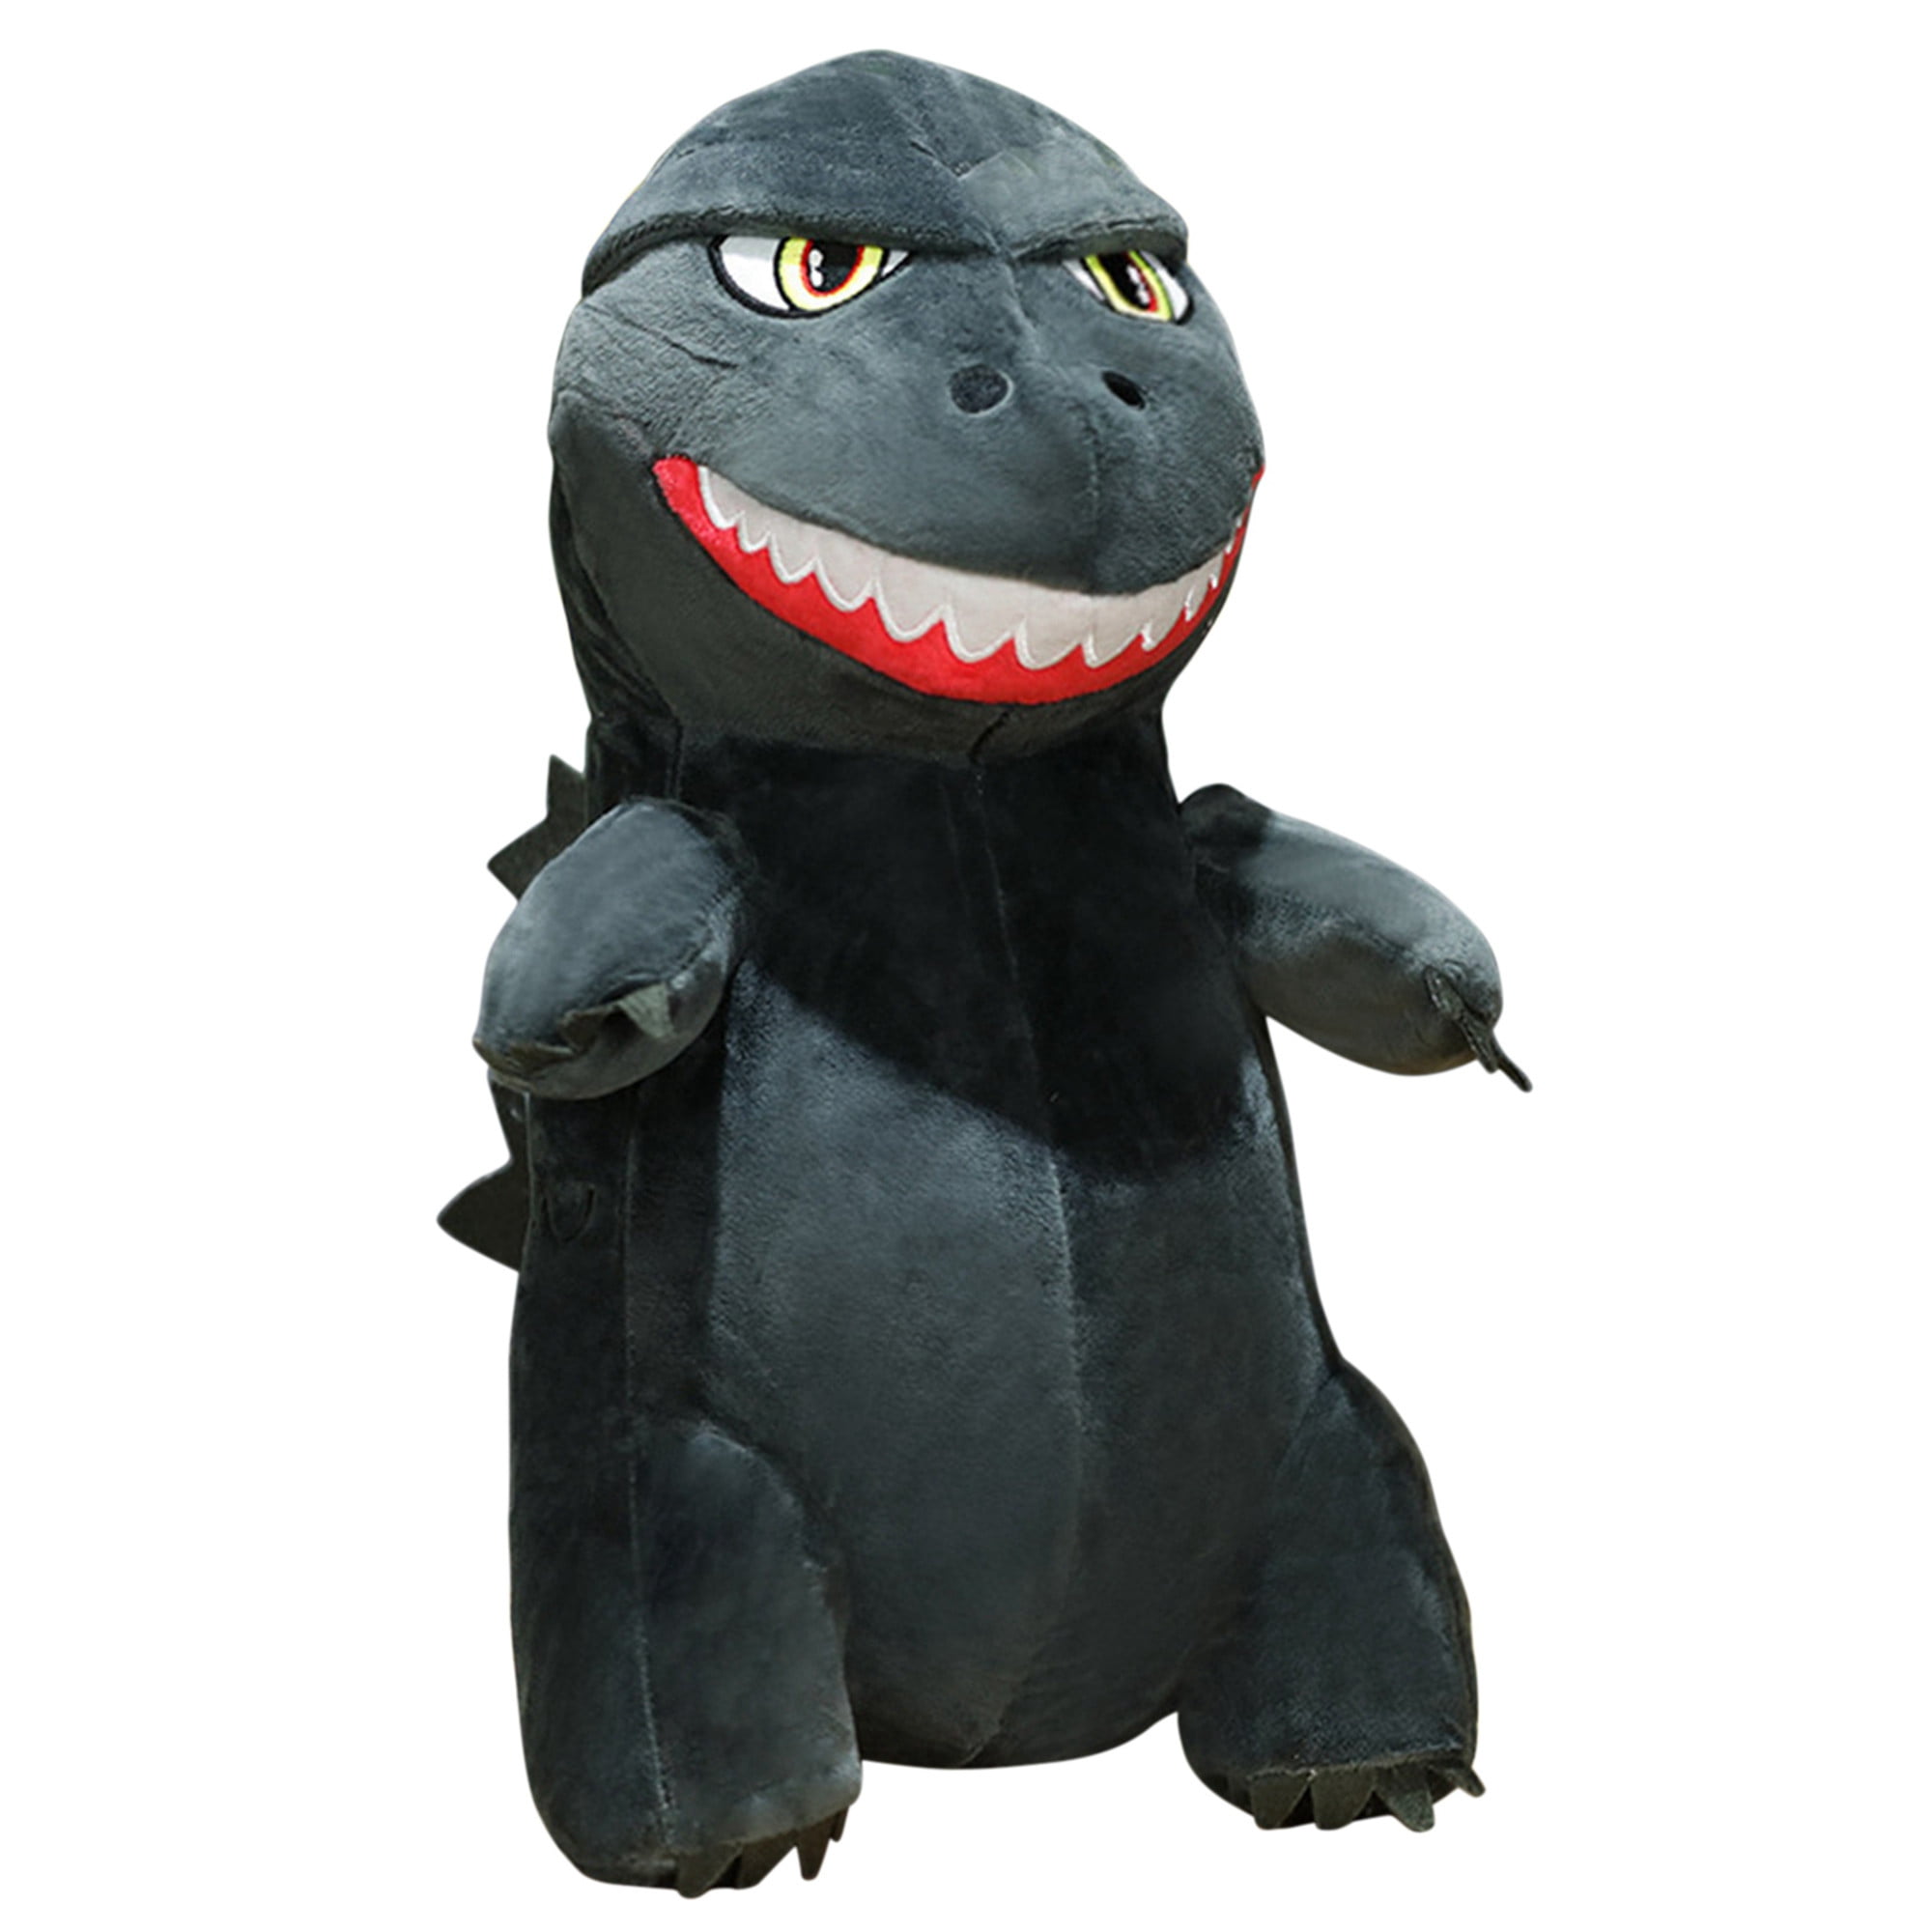 Godzilla 8" Phunny Plush Stuffed Animal Toy Figure Birthday Present Pillow Gift 